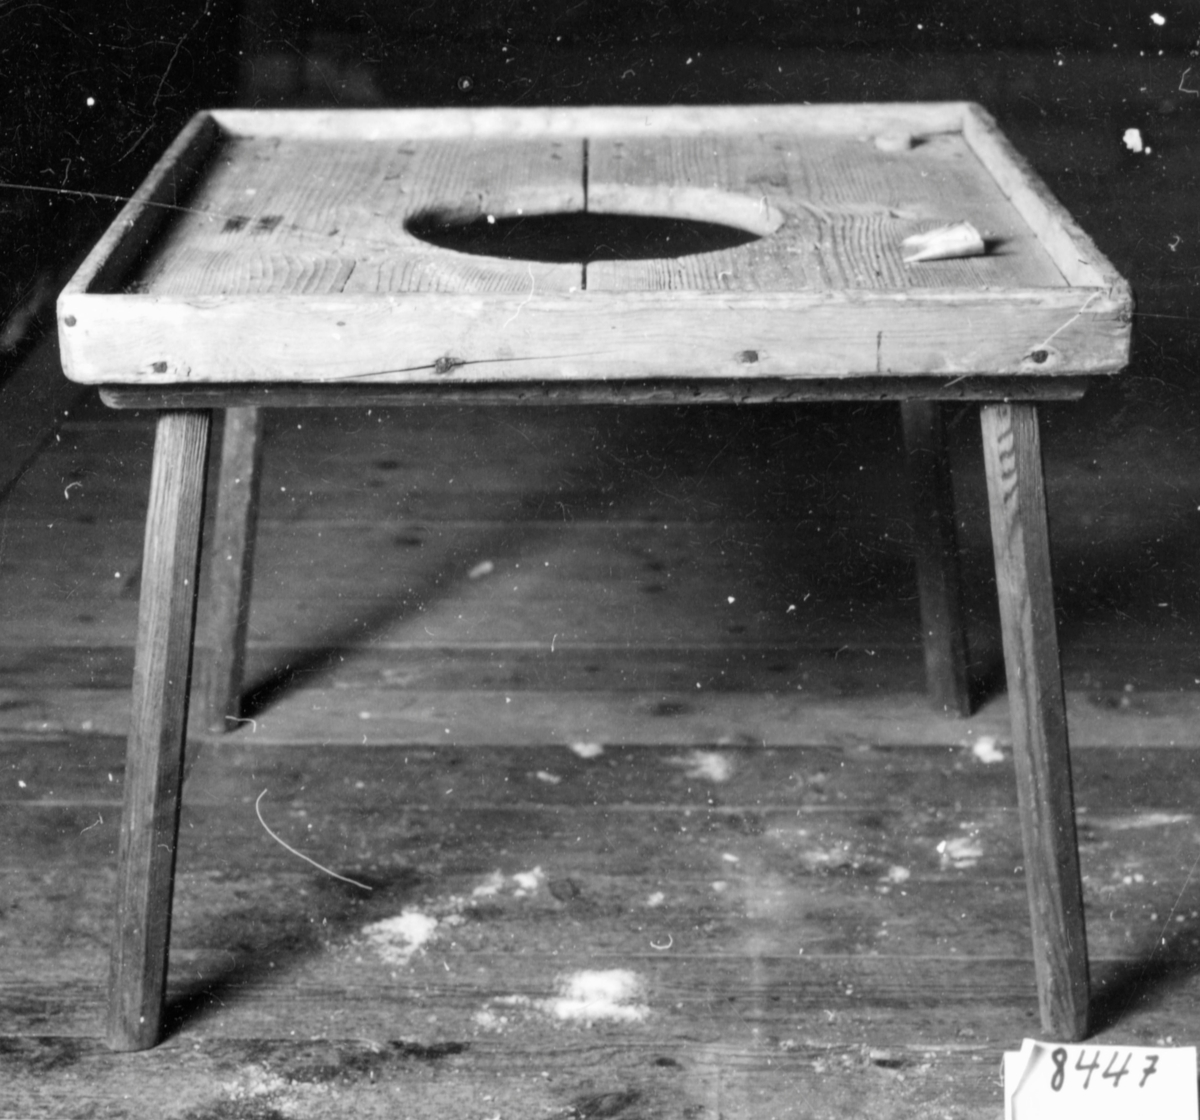 Omålad gåstol med kvadratisk skiva försed med en ca 2 cm hög kant runt om. i mitten ett utsågat hål, 4 st intappade ben.



Neg.nr: 81/1050:11